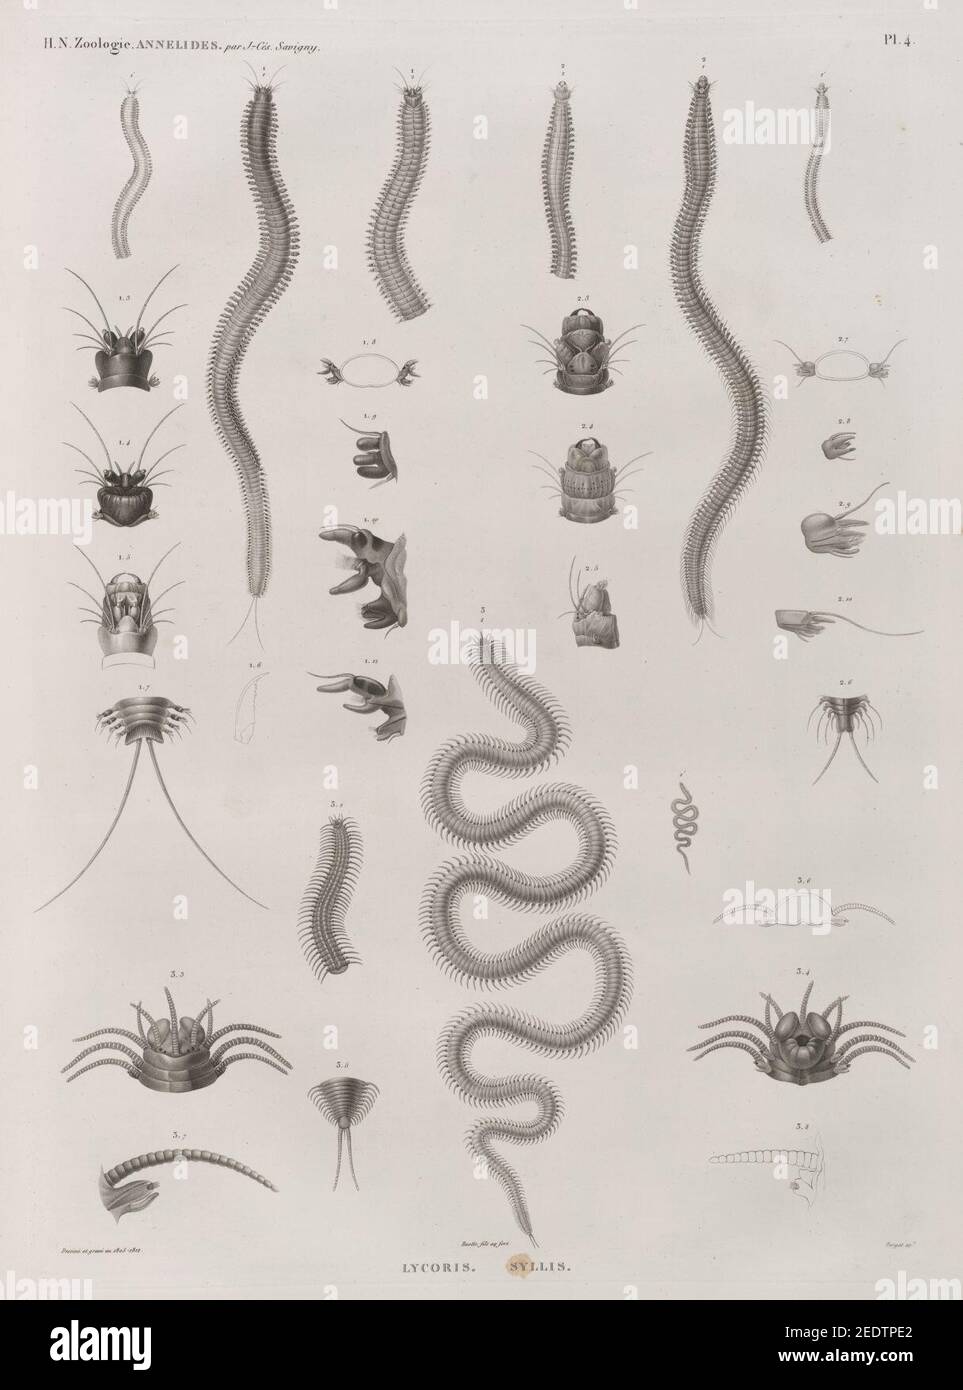 Zoologie. Annélides. Lycoris, Syllis Stock Photo